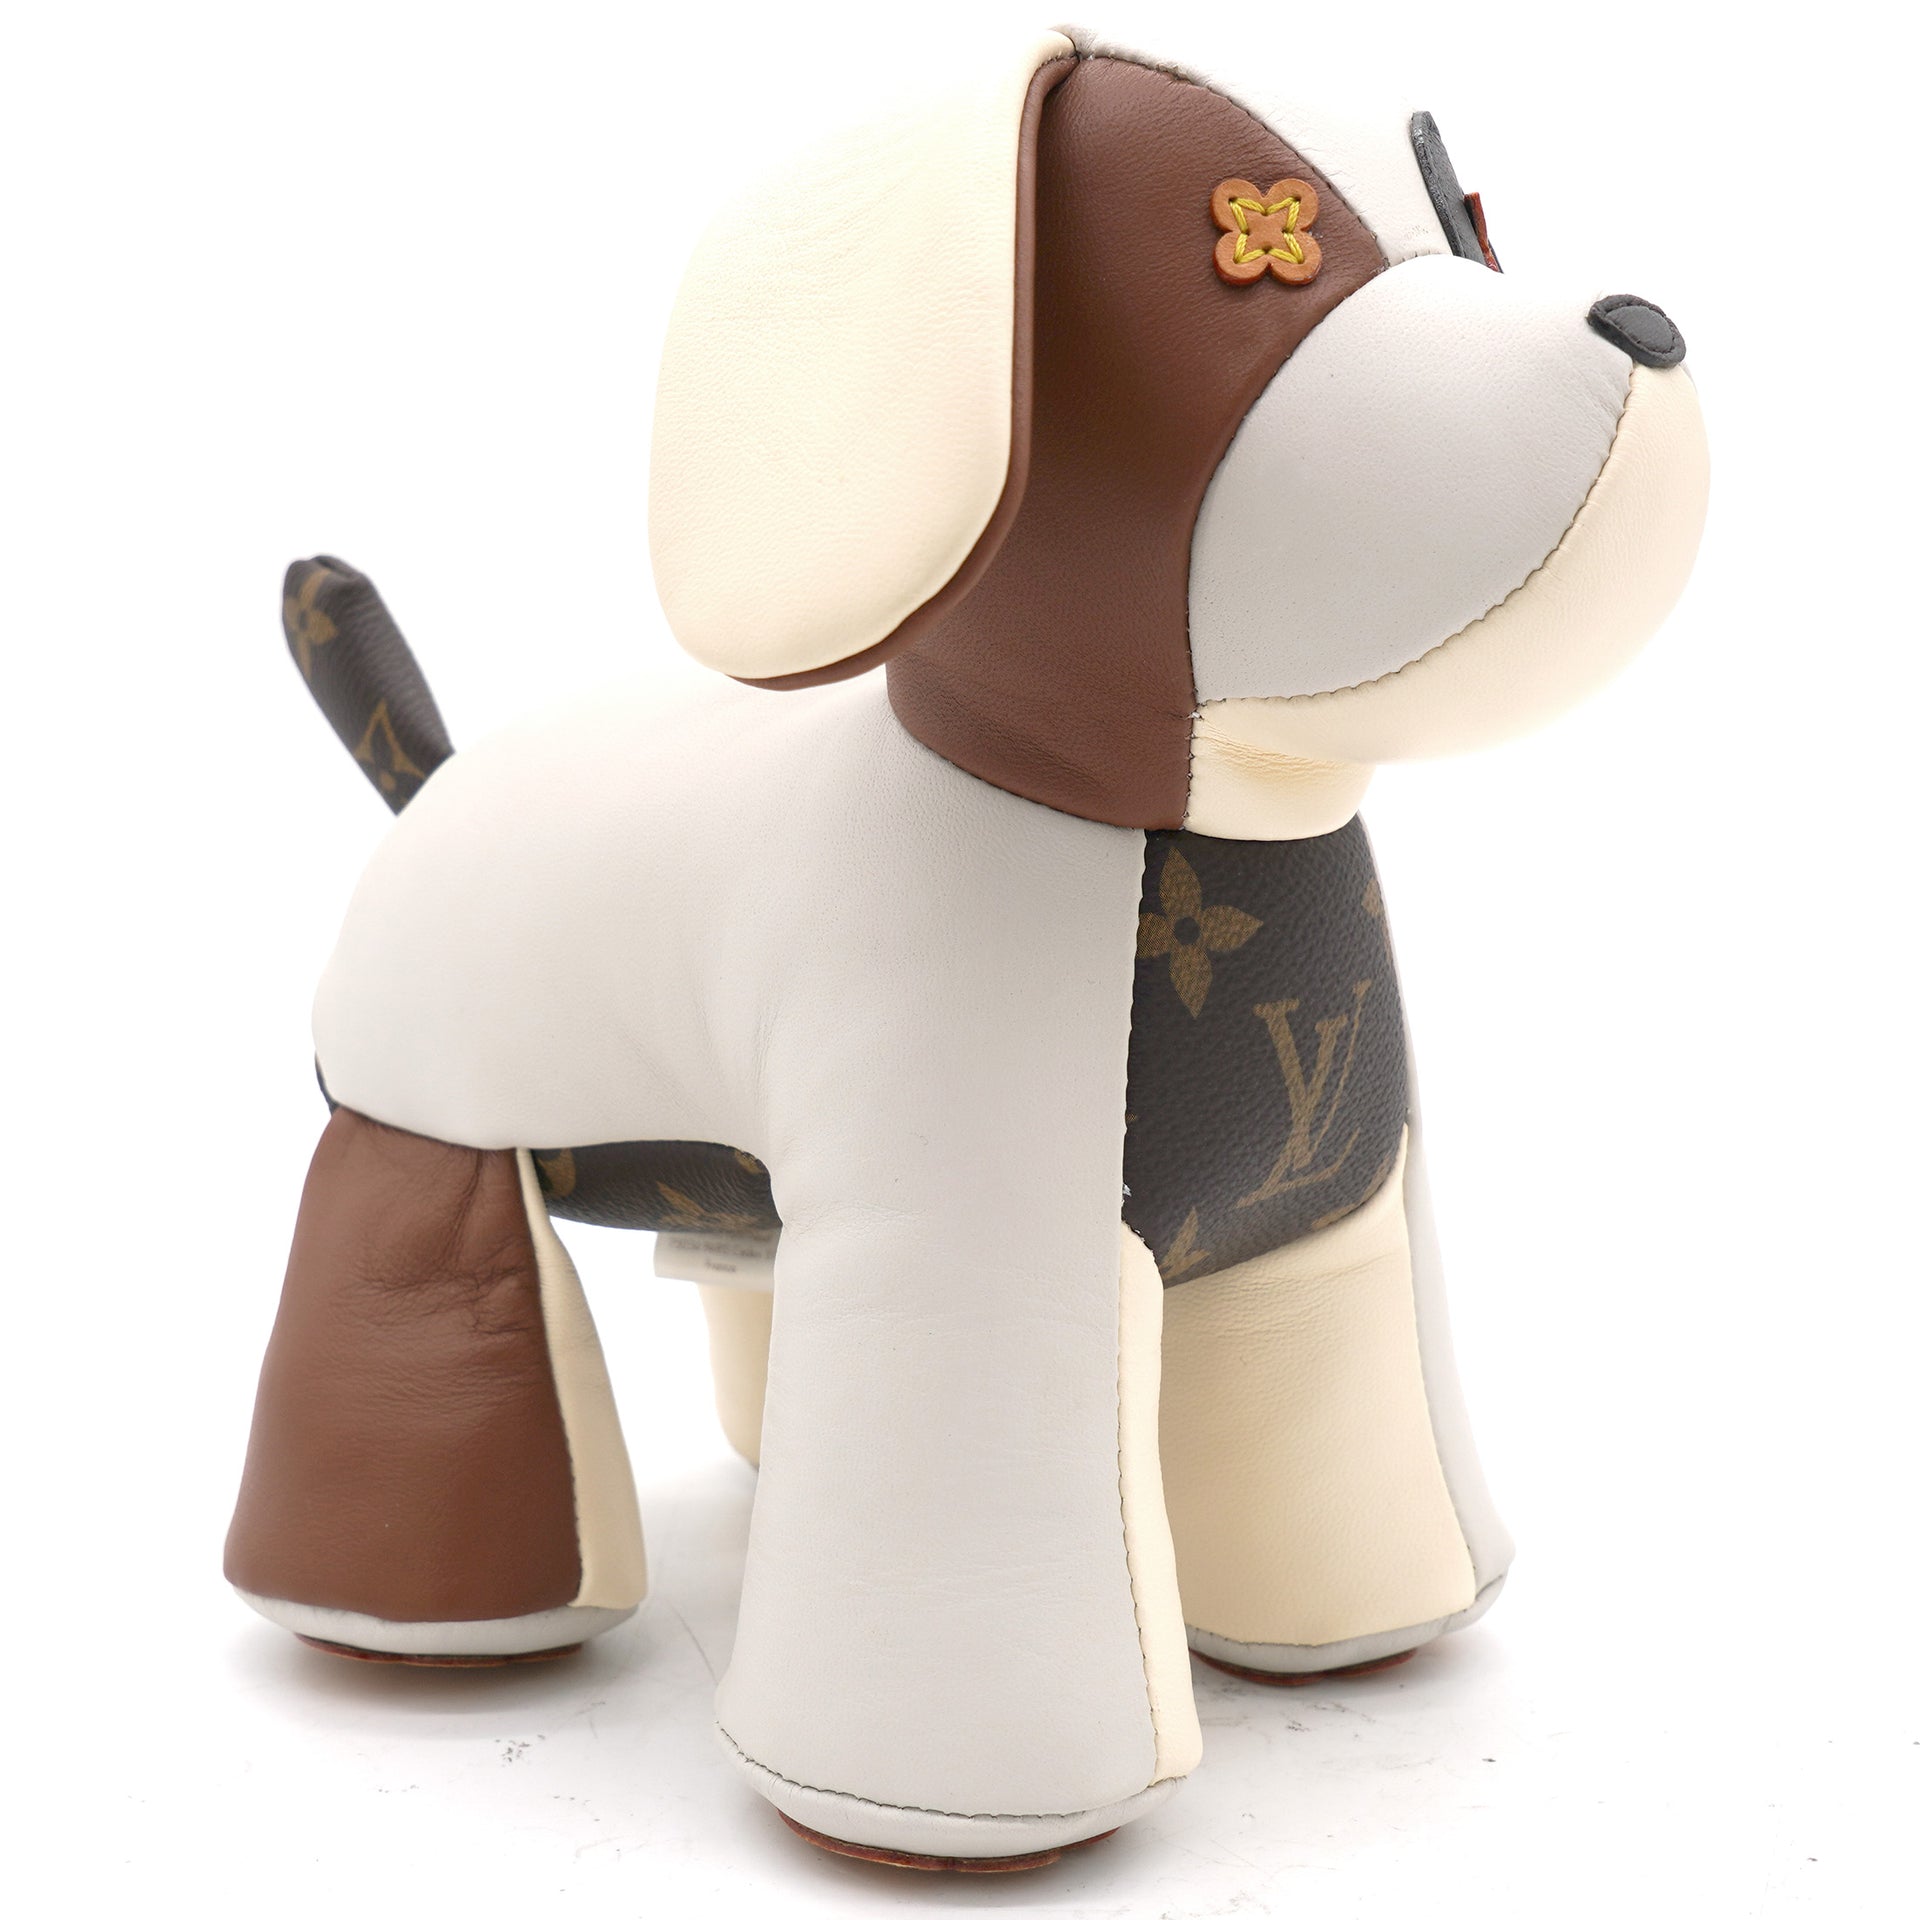 Louis Vuitton DouDou Oscar Dog Plush - White Kids Decor